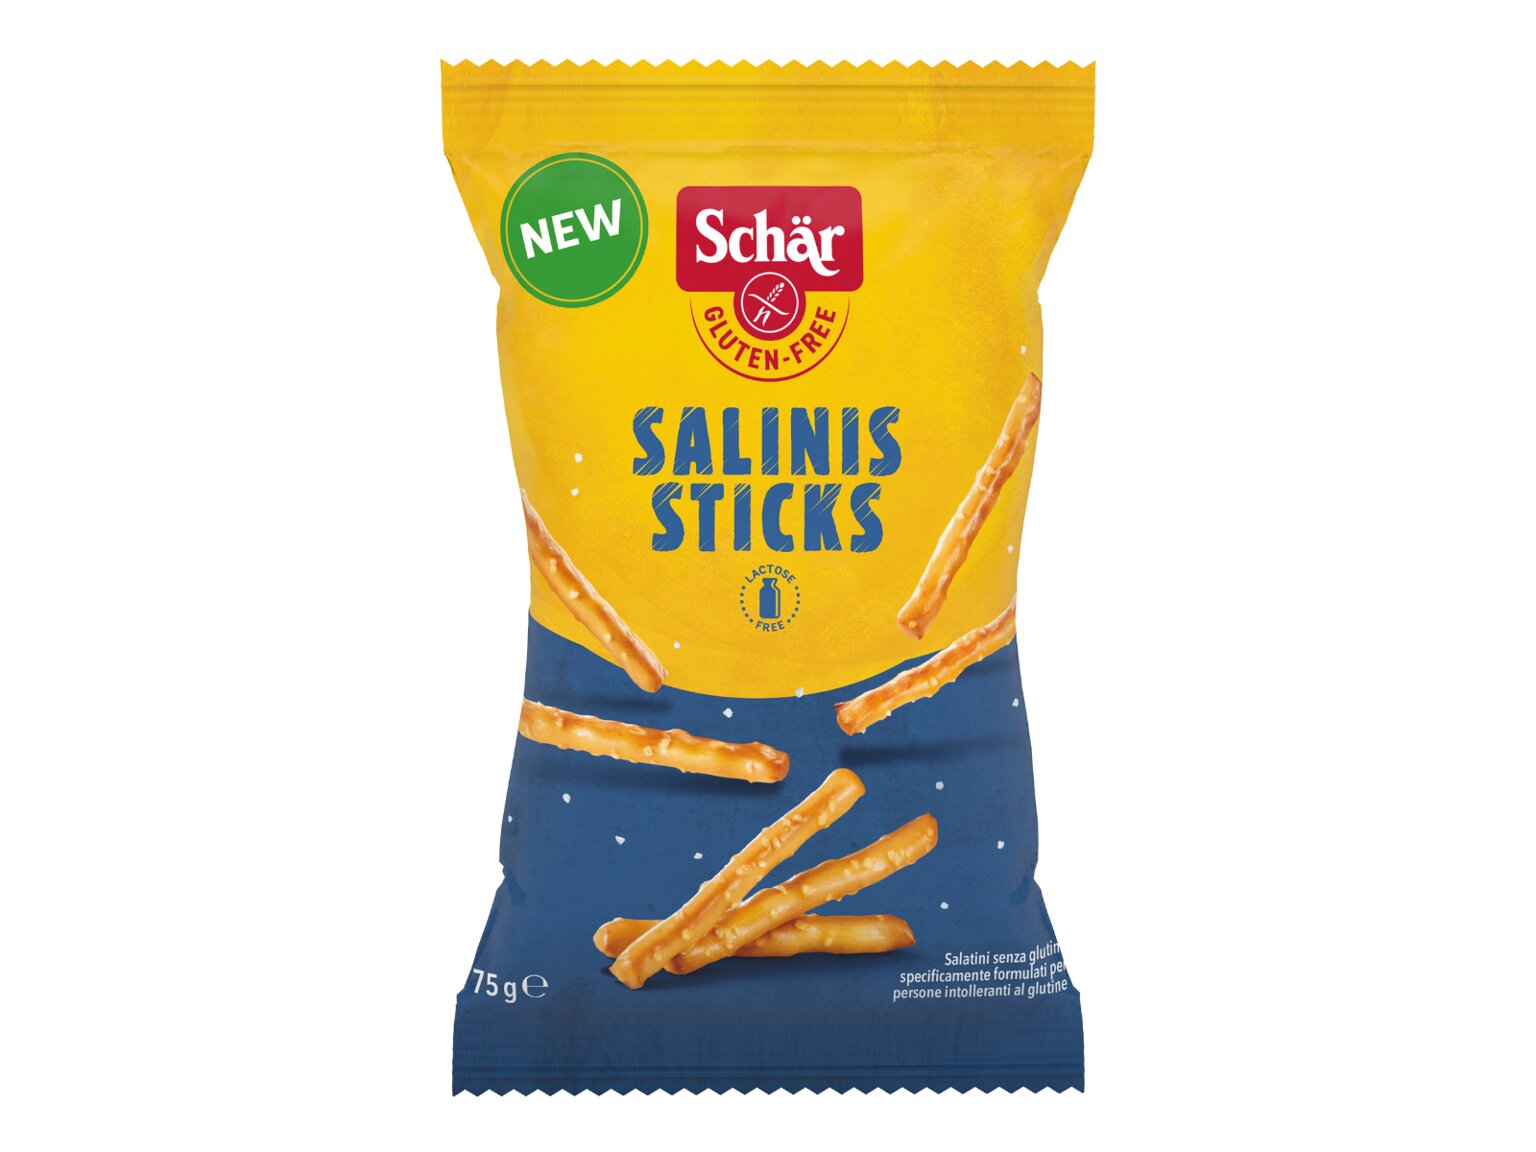 SALINIS STICKS